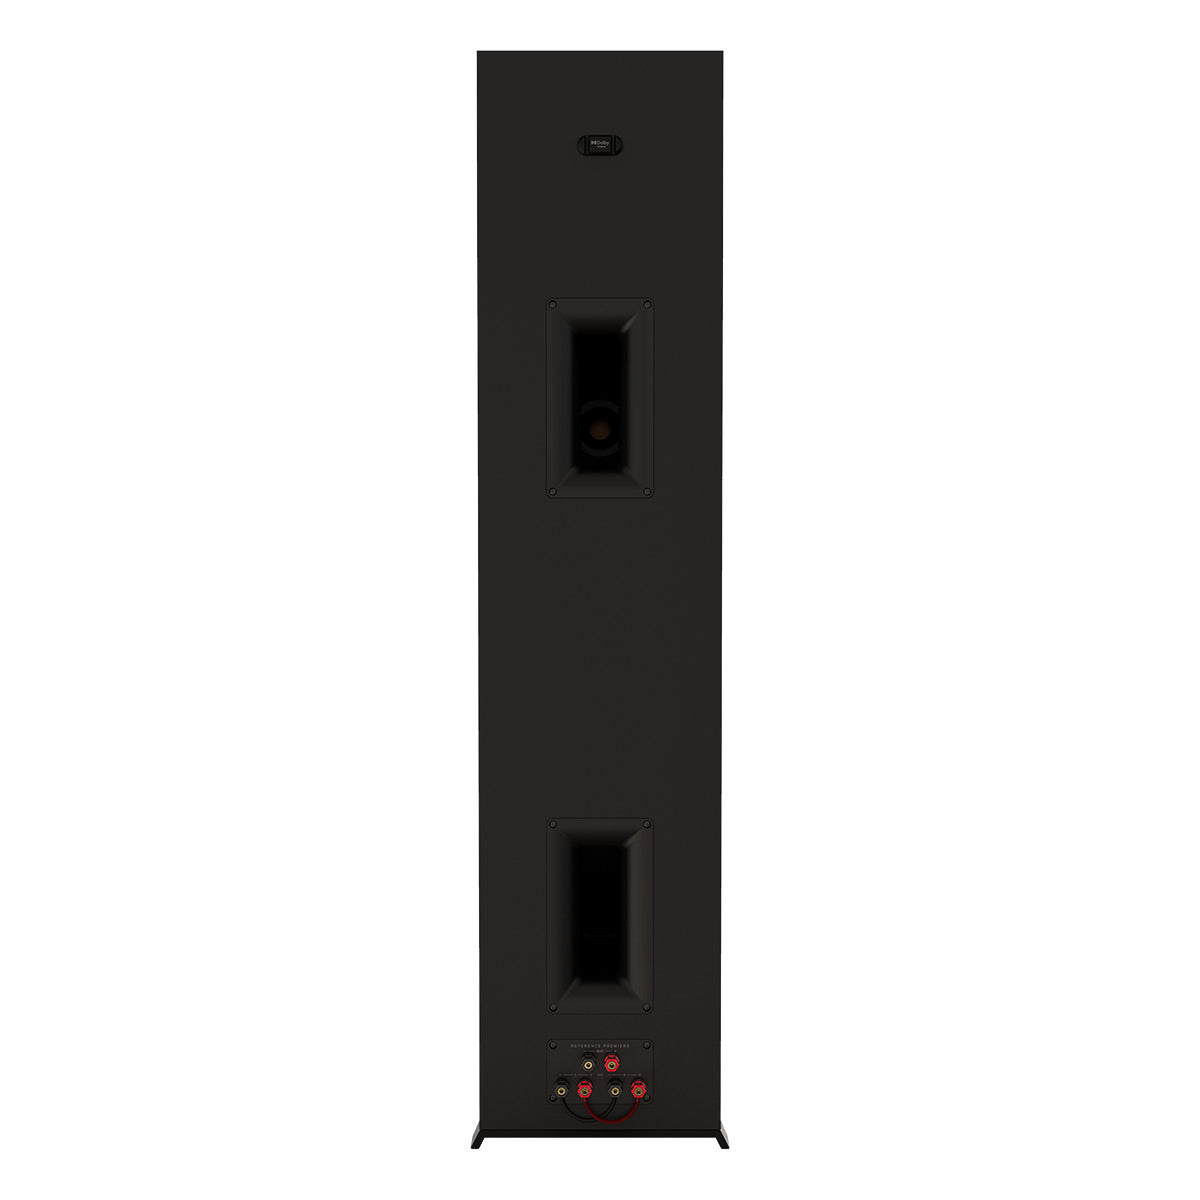 Klipsch RP-8000F II Reference Premiere Floorstanding Speaker - Each (Ebony)